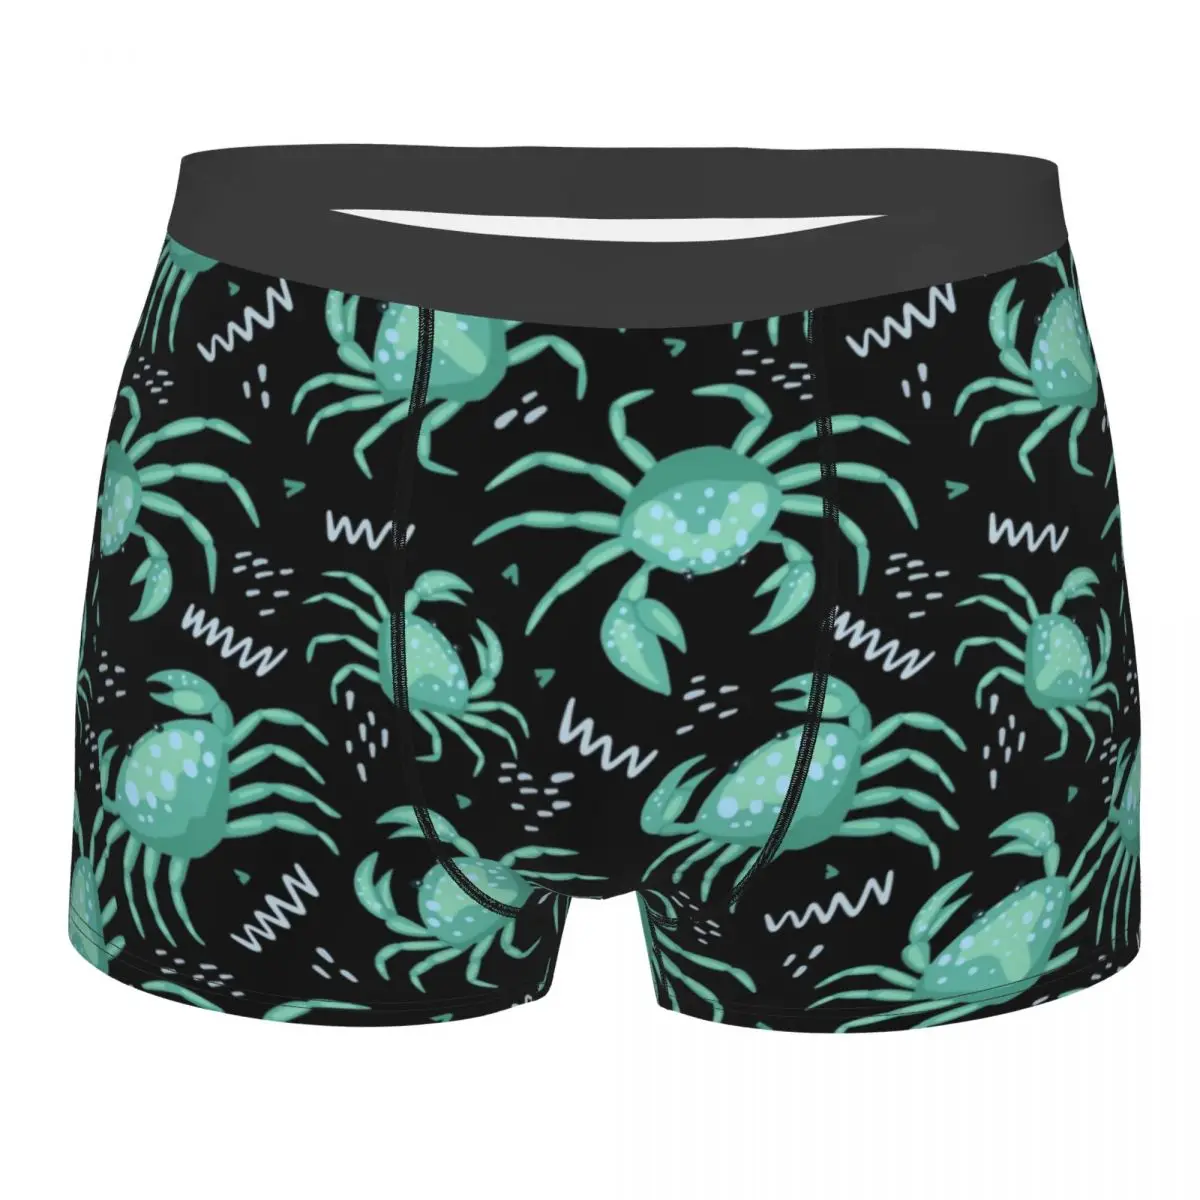 Bonito Caranguejos do mar Estrela do Mar Animais de Homens de Cueca Boxer Shorts, Cuecas Humor Poliéster Cuecas para Homme Plus Size